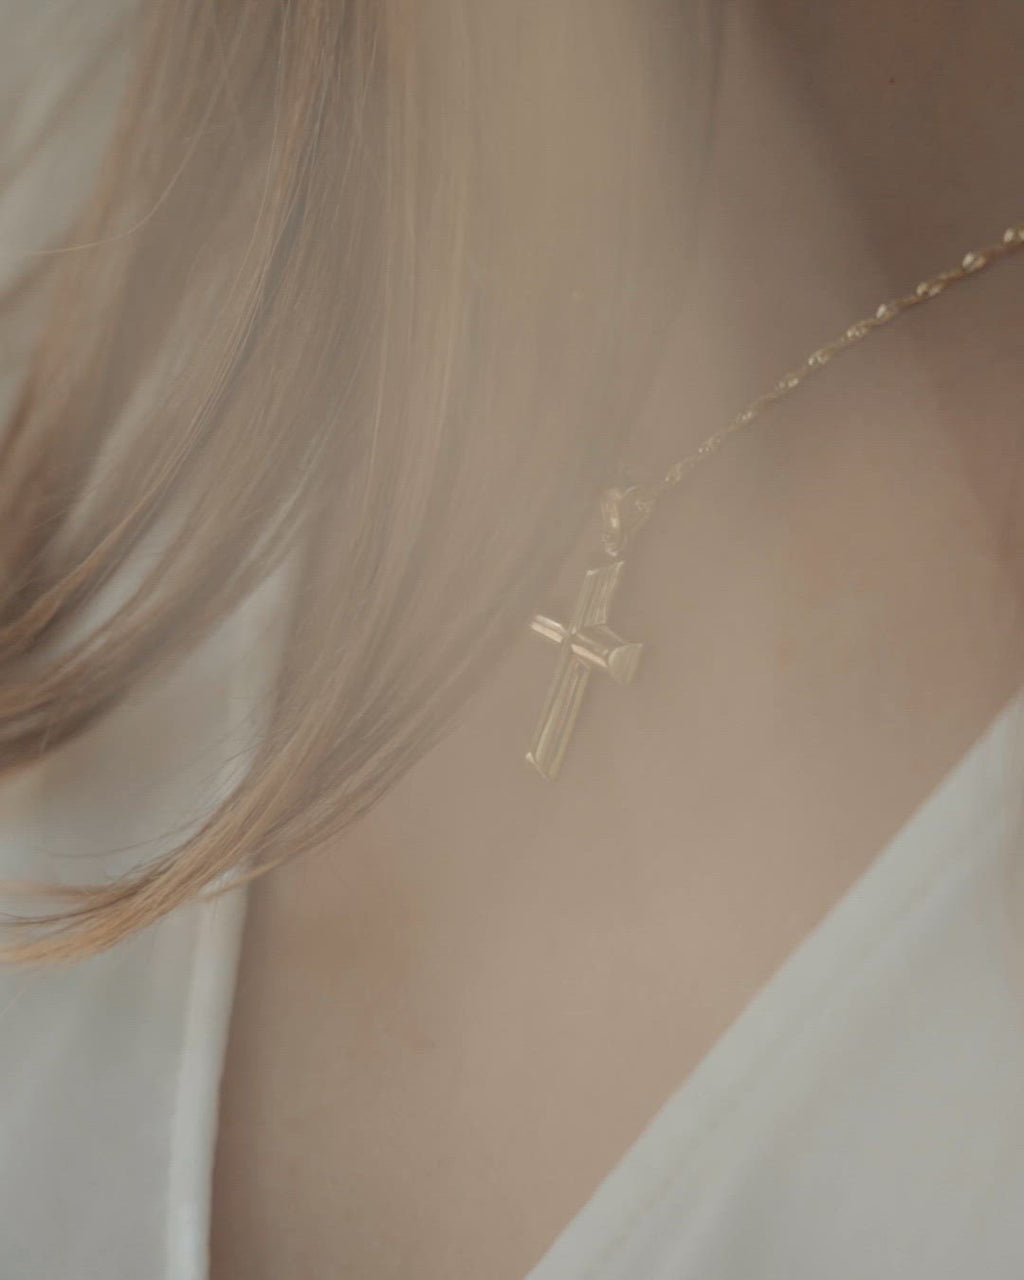 Κλασσικός σταυρός από χρυσό Κ14 για γυναίκα, φορεμένος σε μοντέλο.